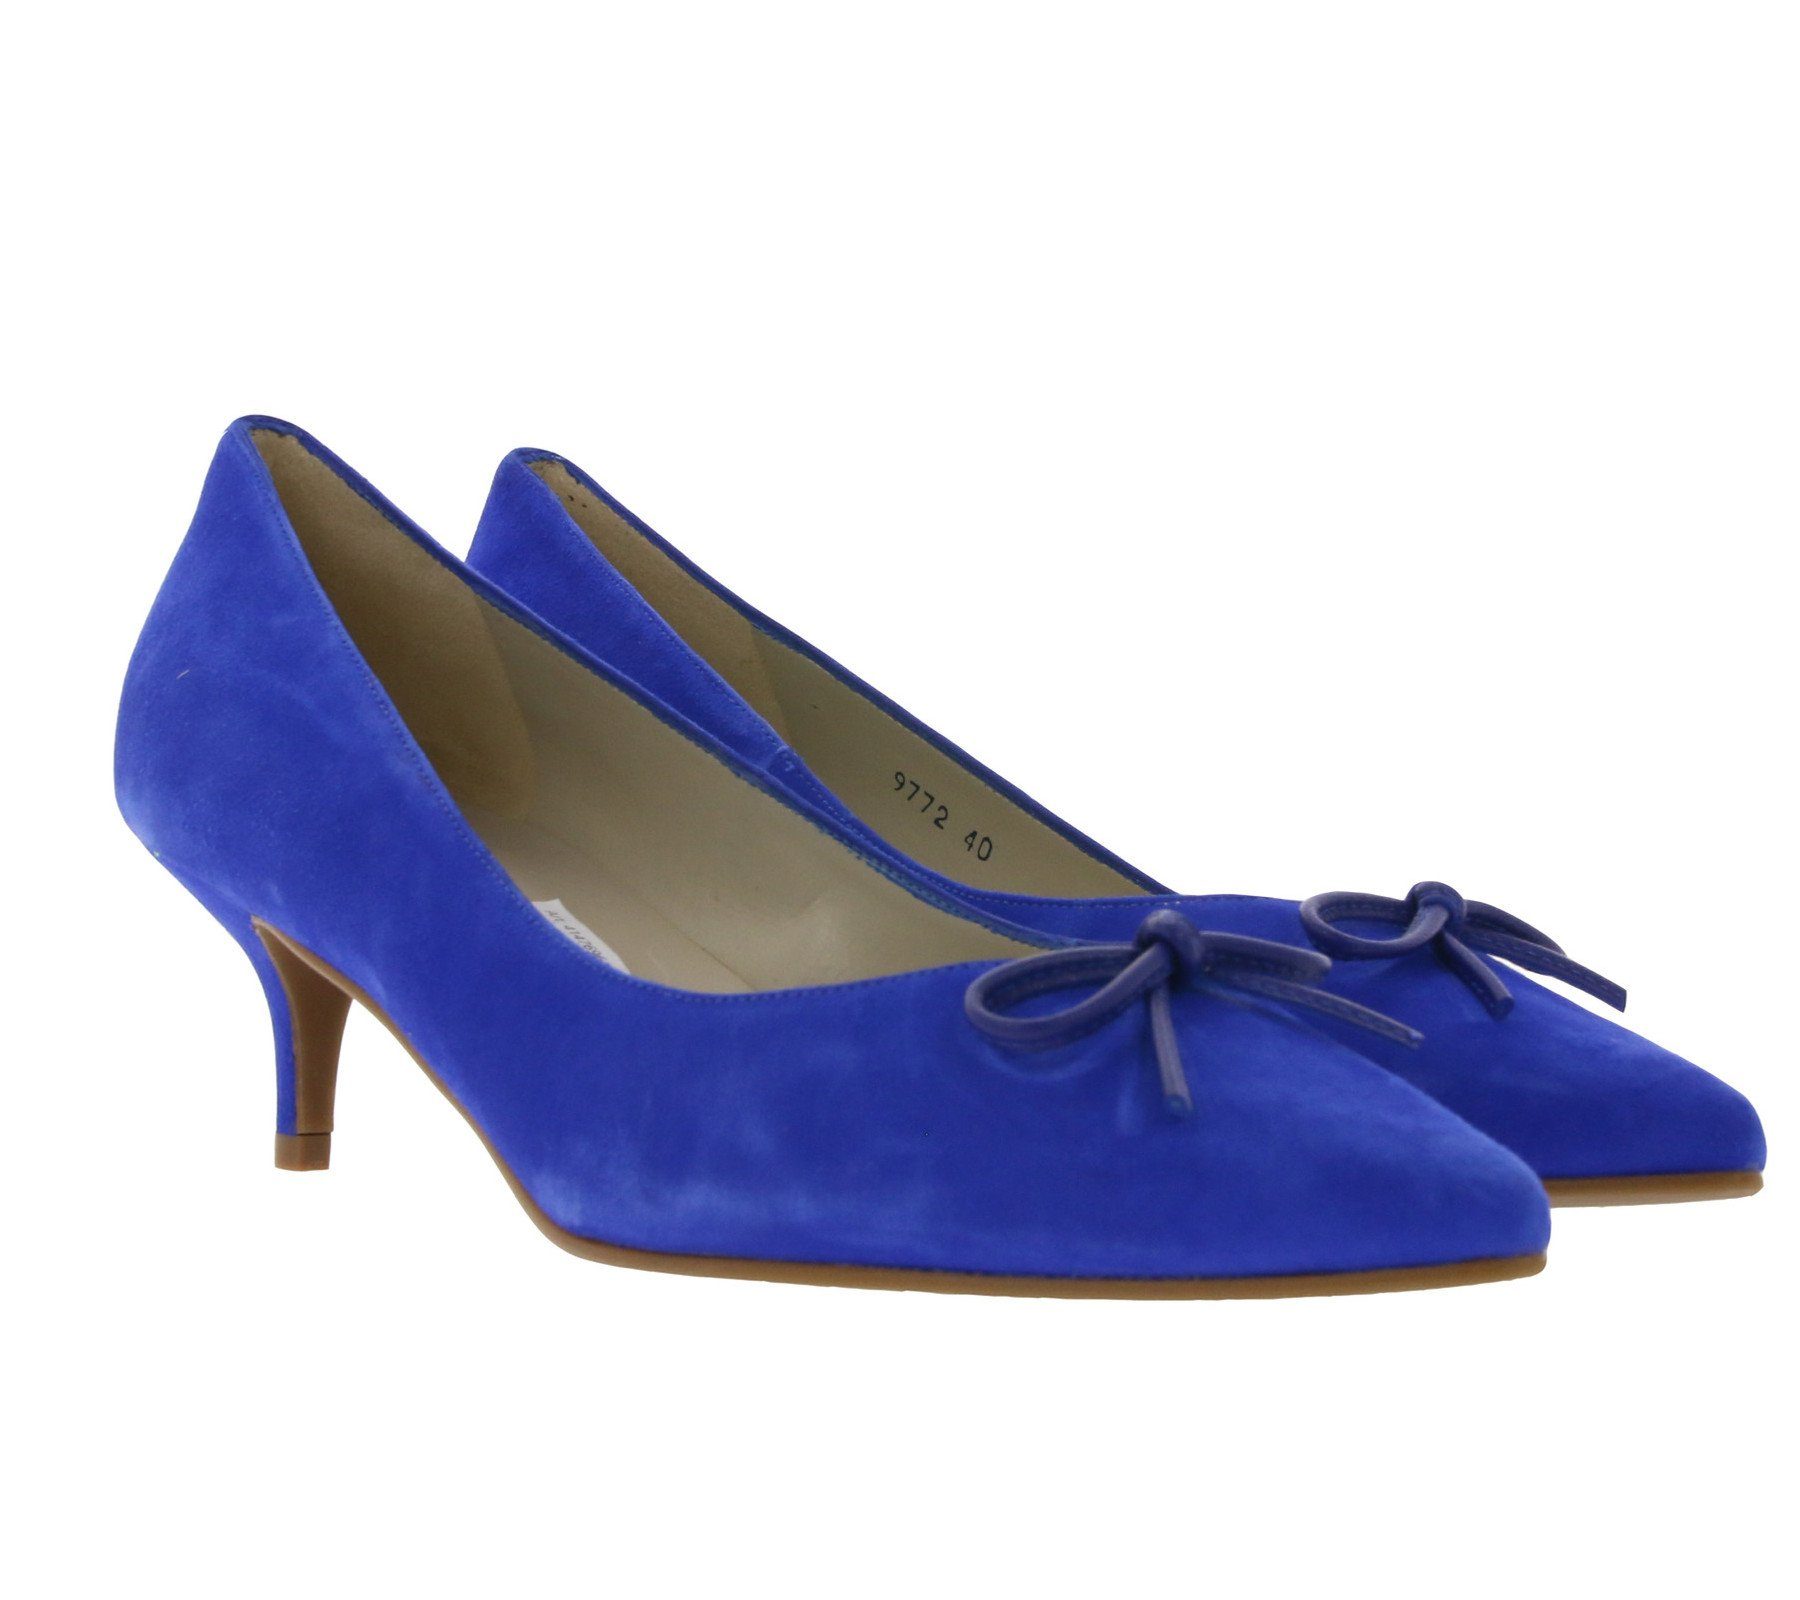 Pollini Leder Pumps in Blau Damen Schuhe Absätze Pumps 